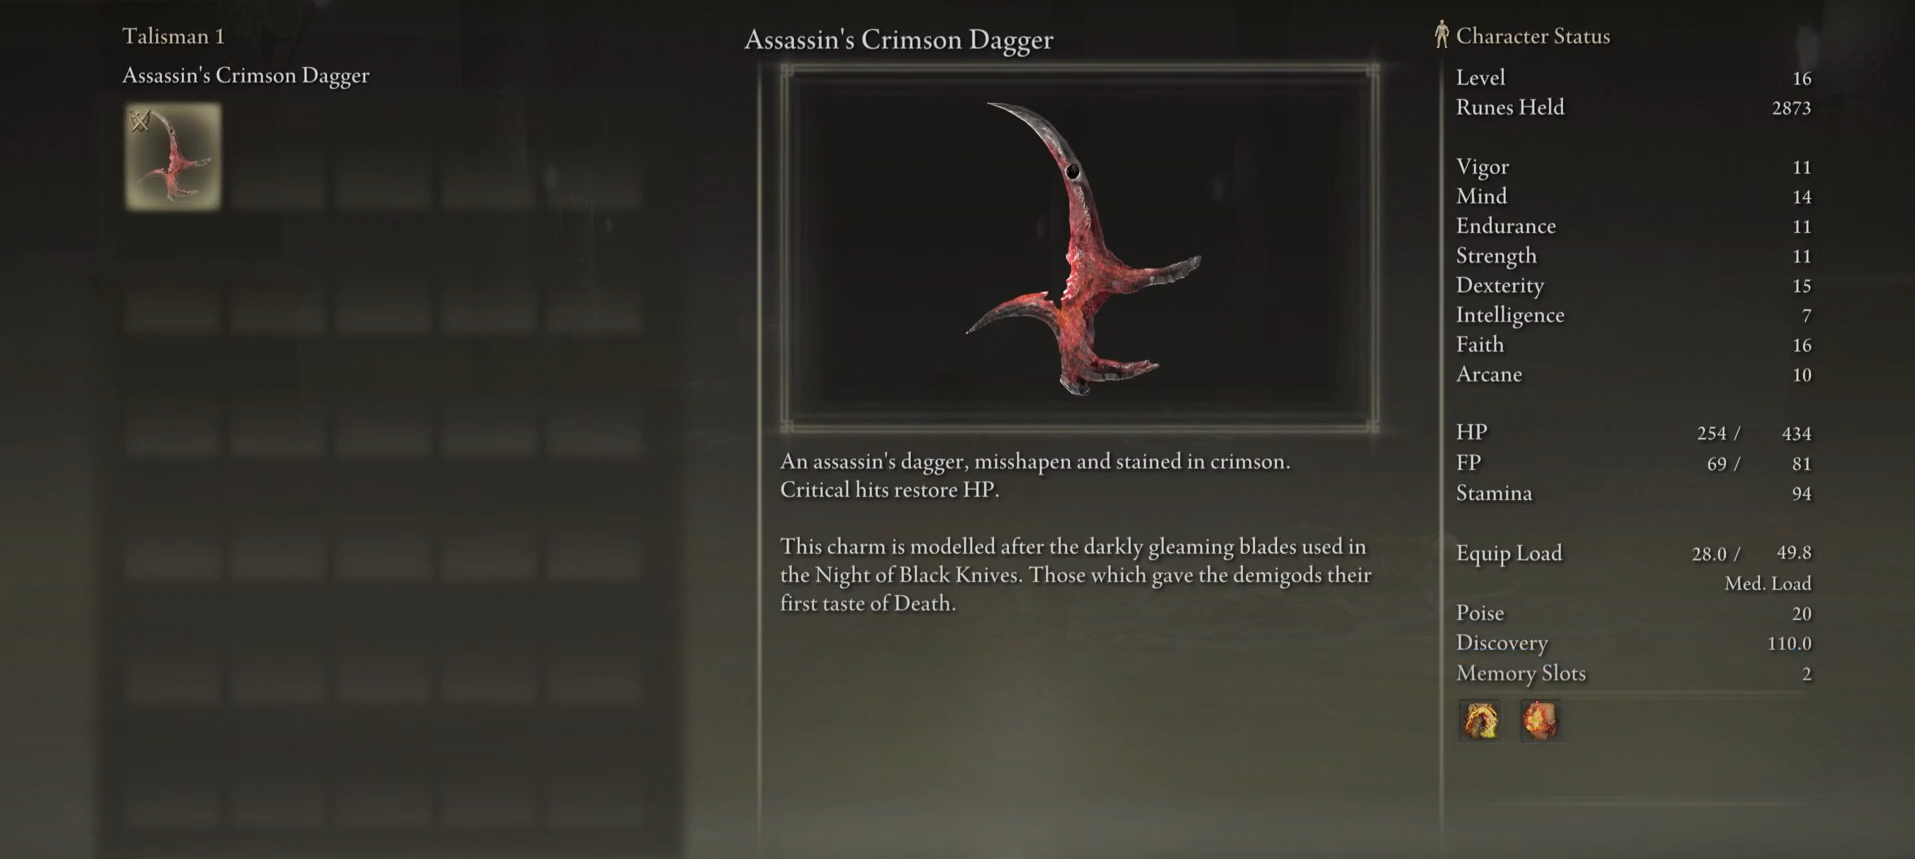  Assassin's crimson dagger